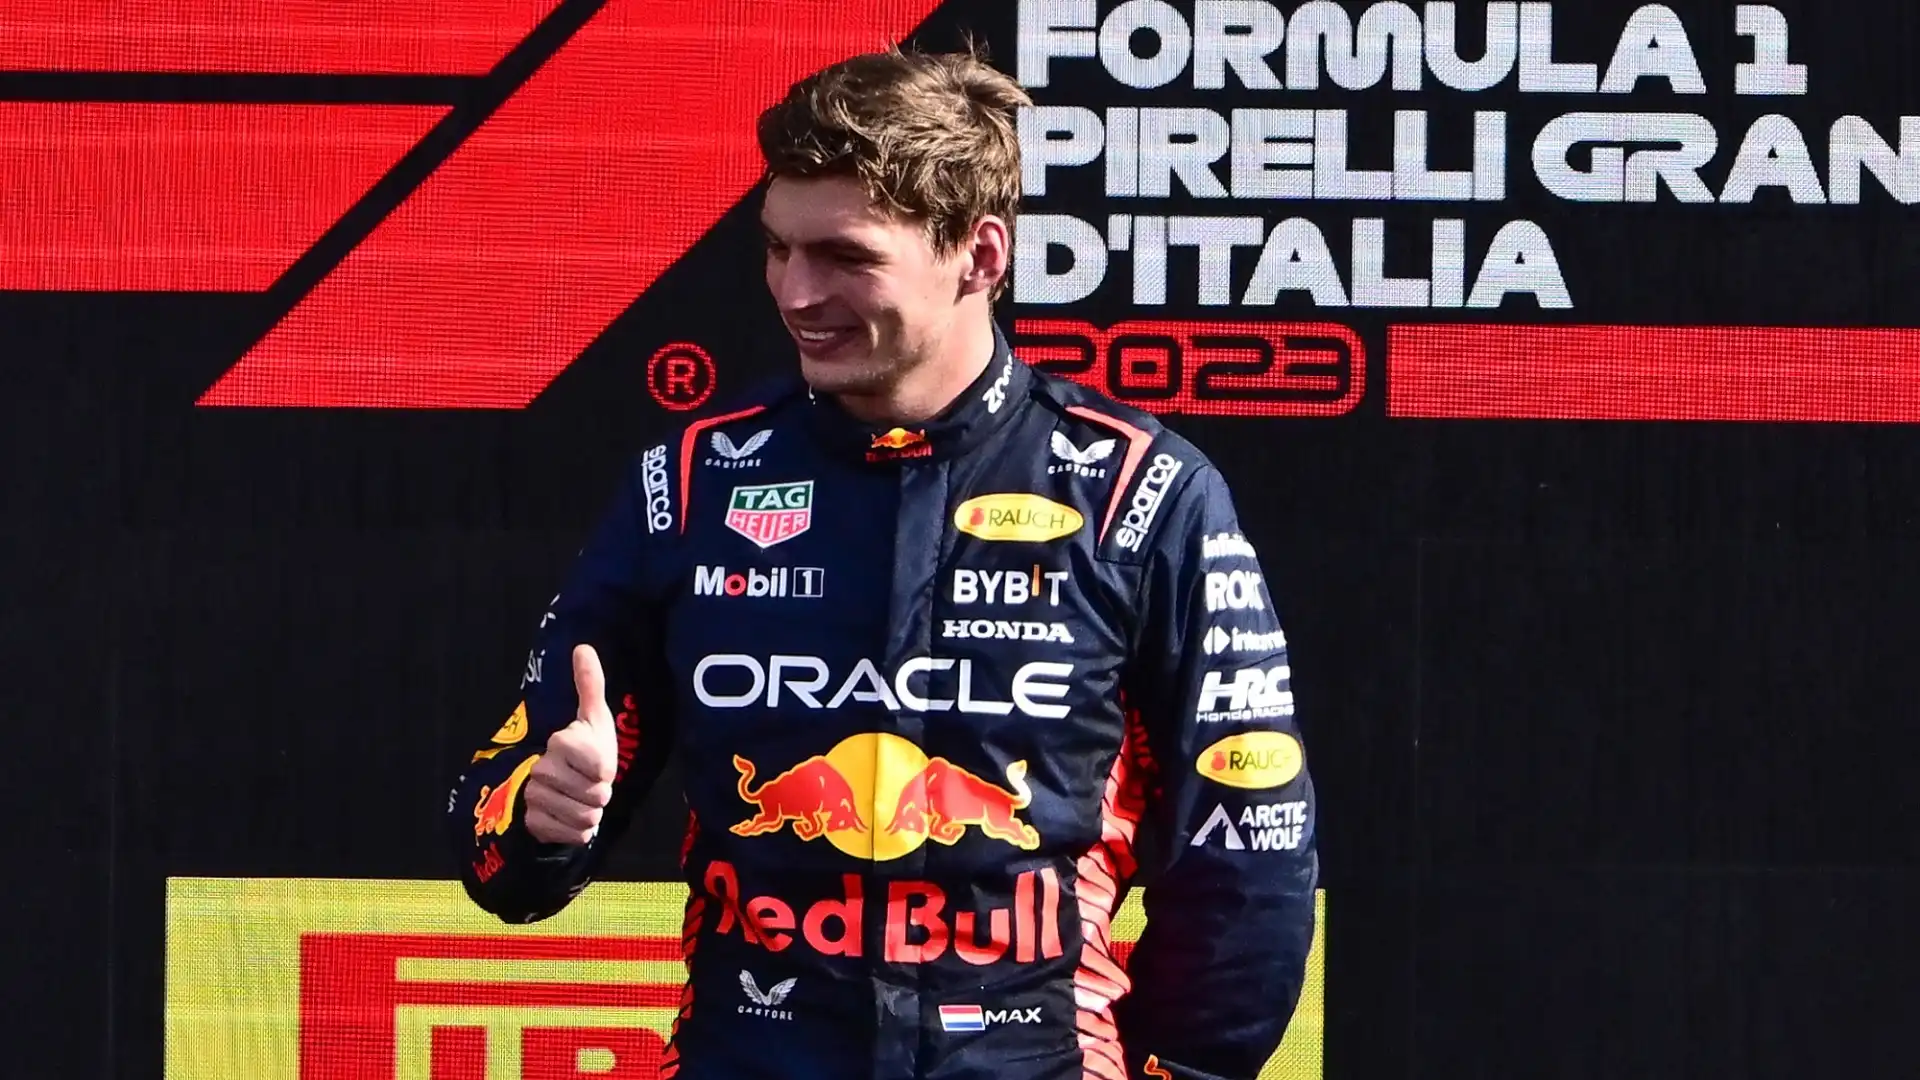 Il pilota della Red Bull a Monza ha ottenuto la decima vittoria consecutiva, un record storico in F1